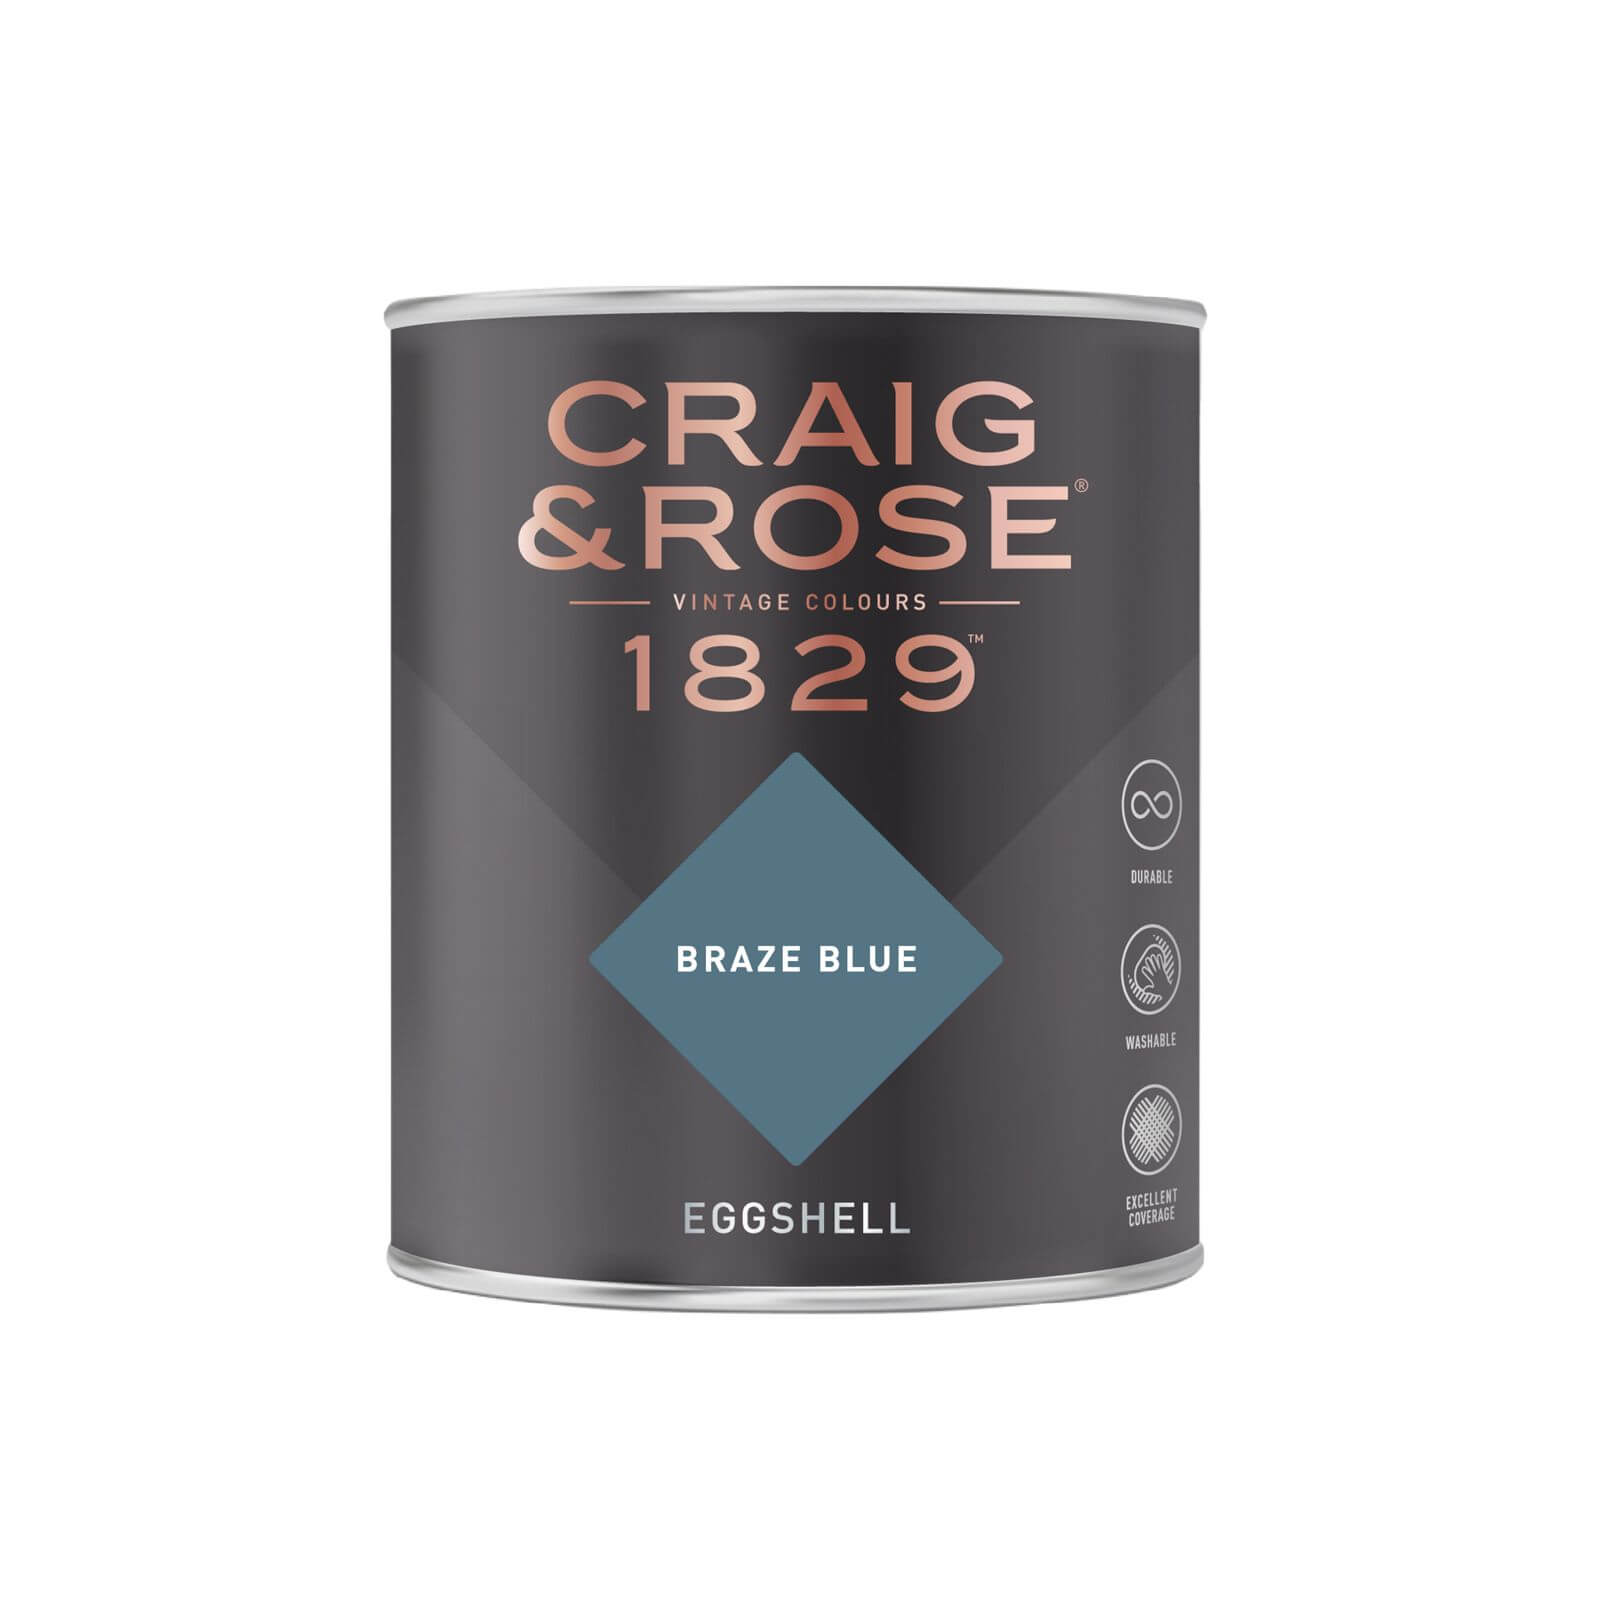 Craig & Rose 1829 Eggshell Paint Braze Blue - 750ml